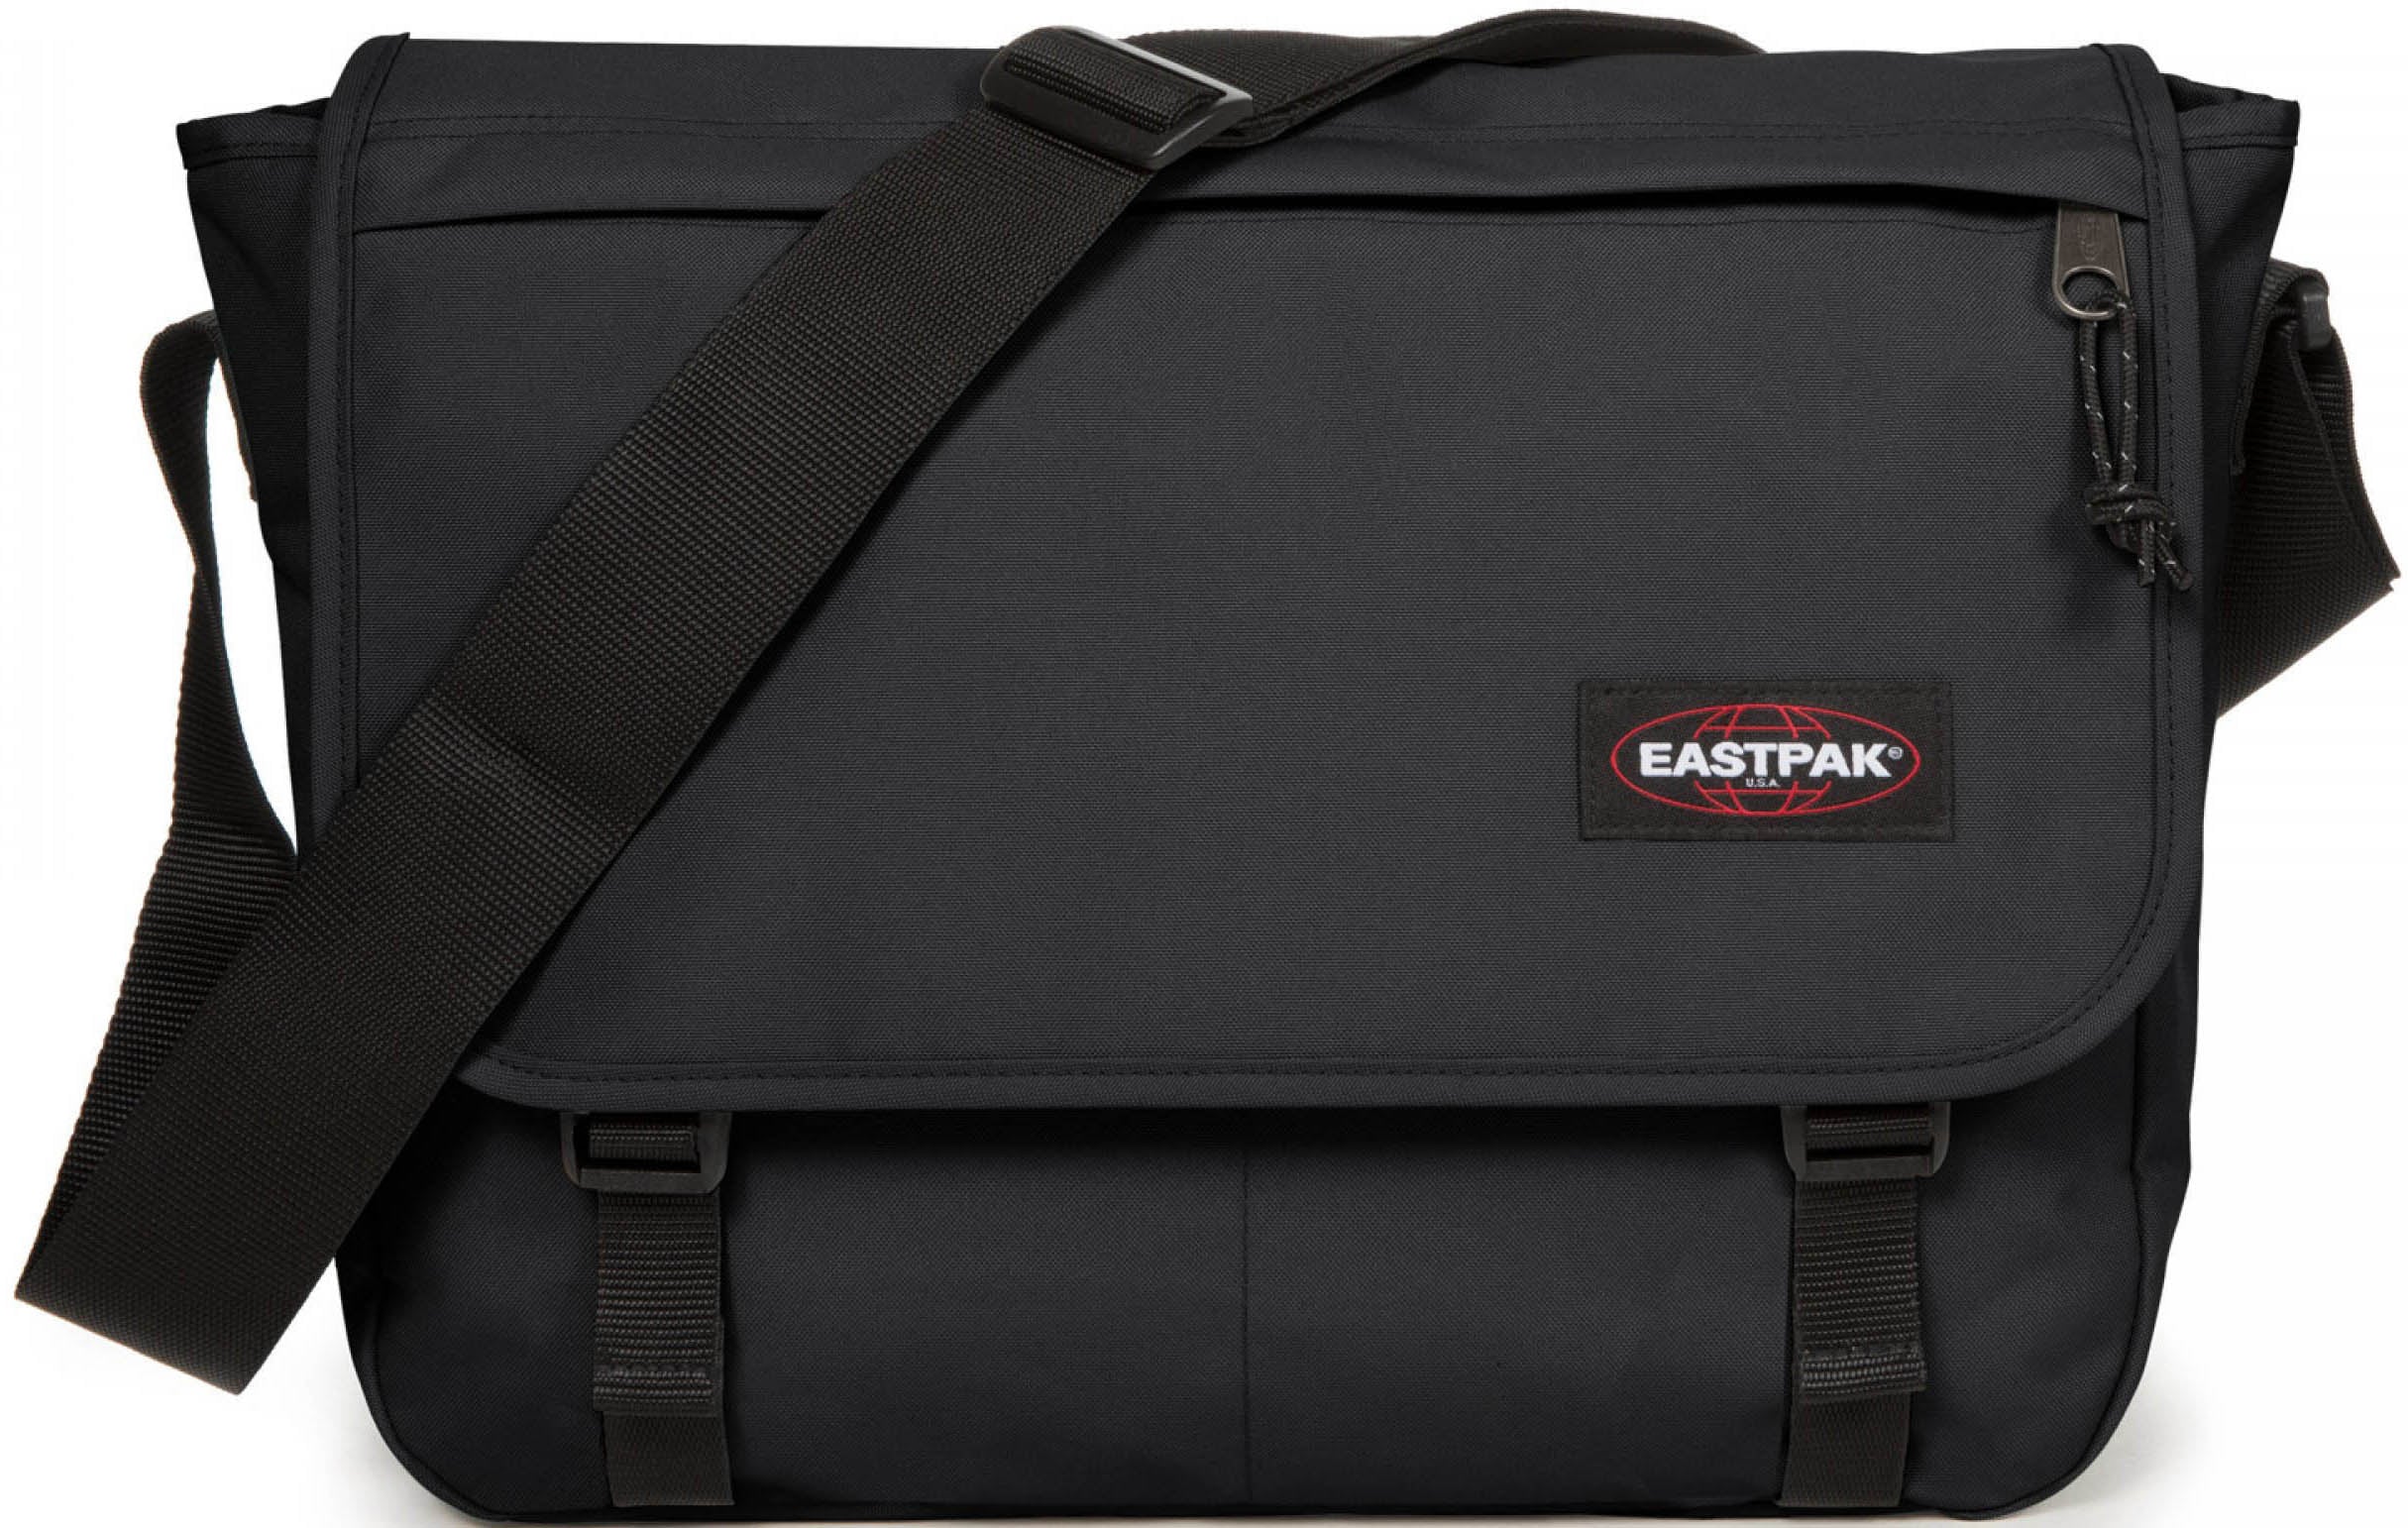 Eastpak Messenger Bag "Delegate +"